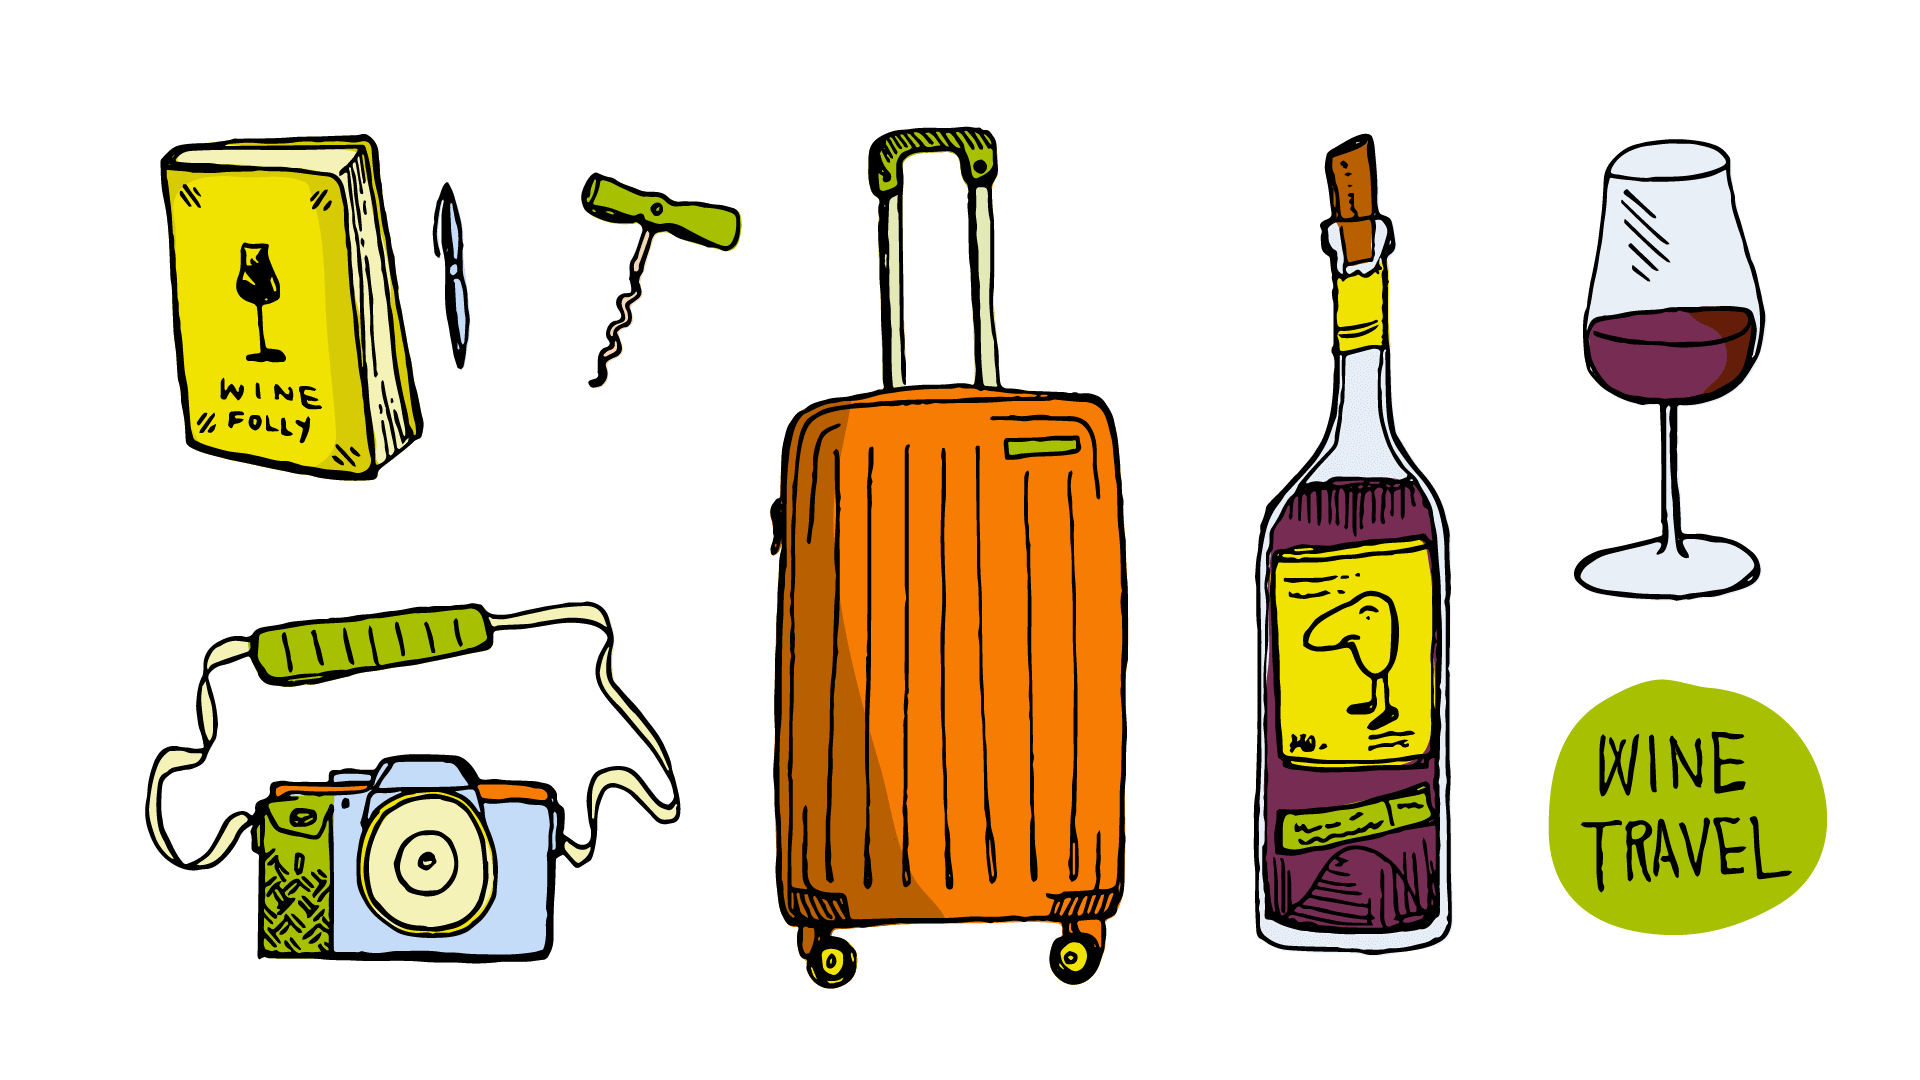 plan a wine tour